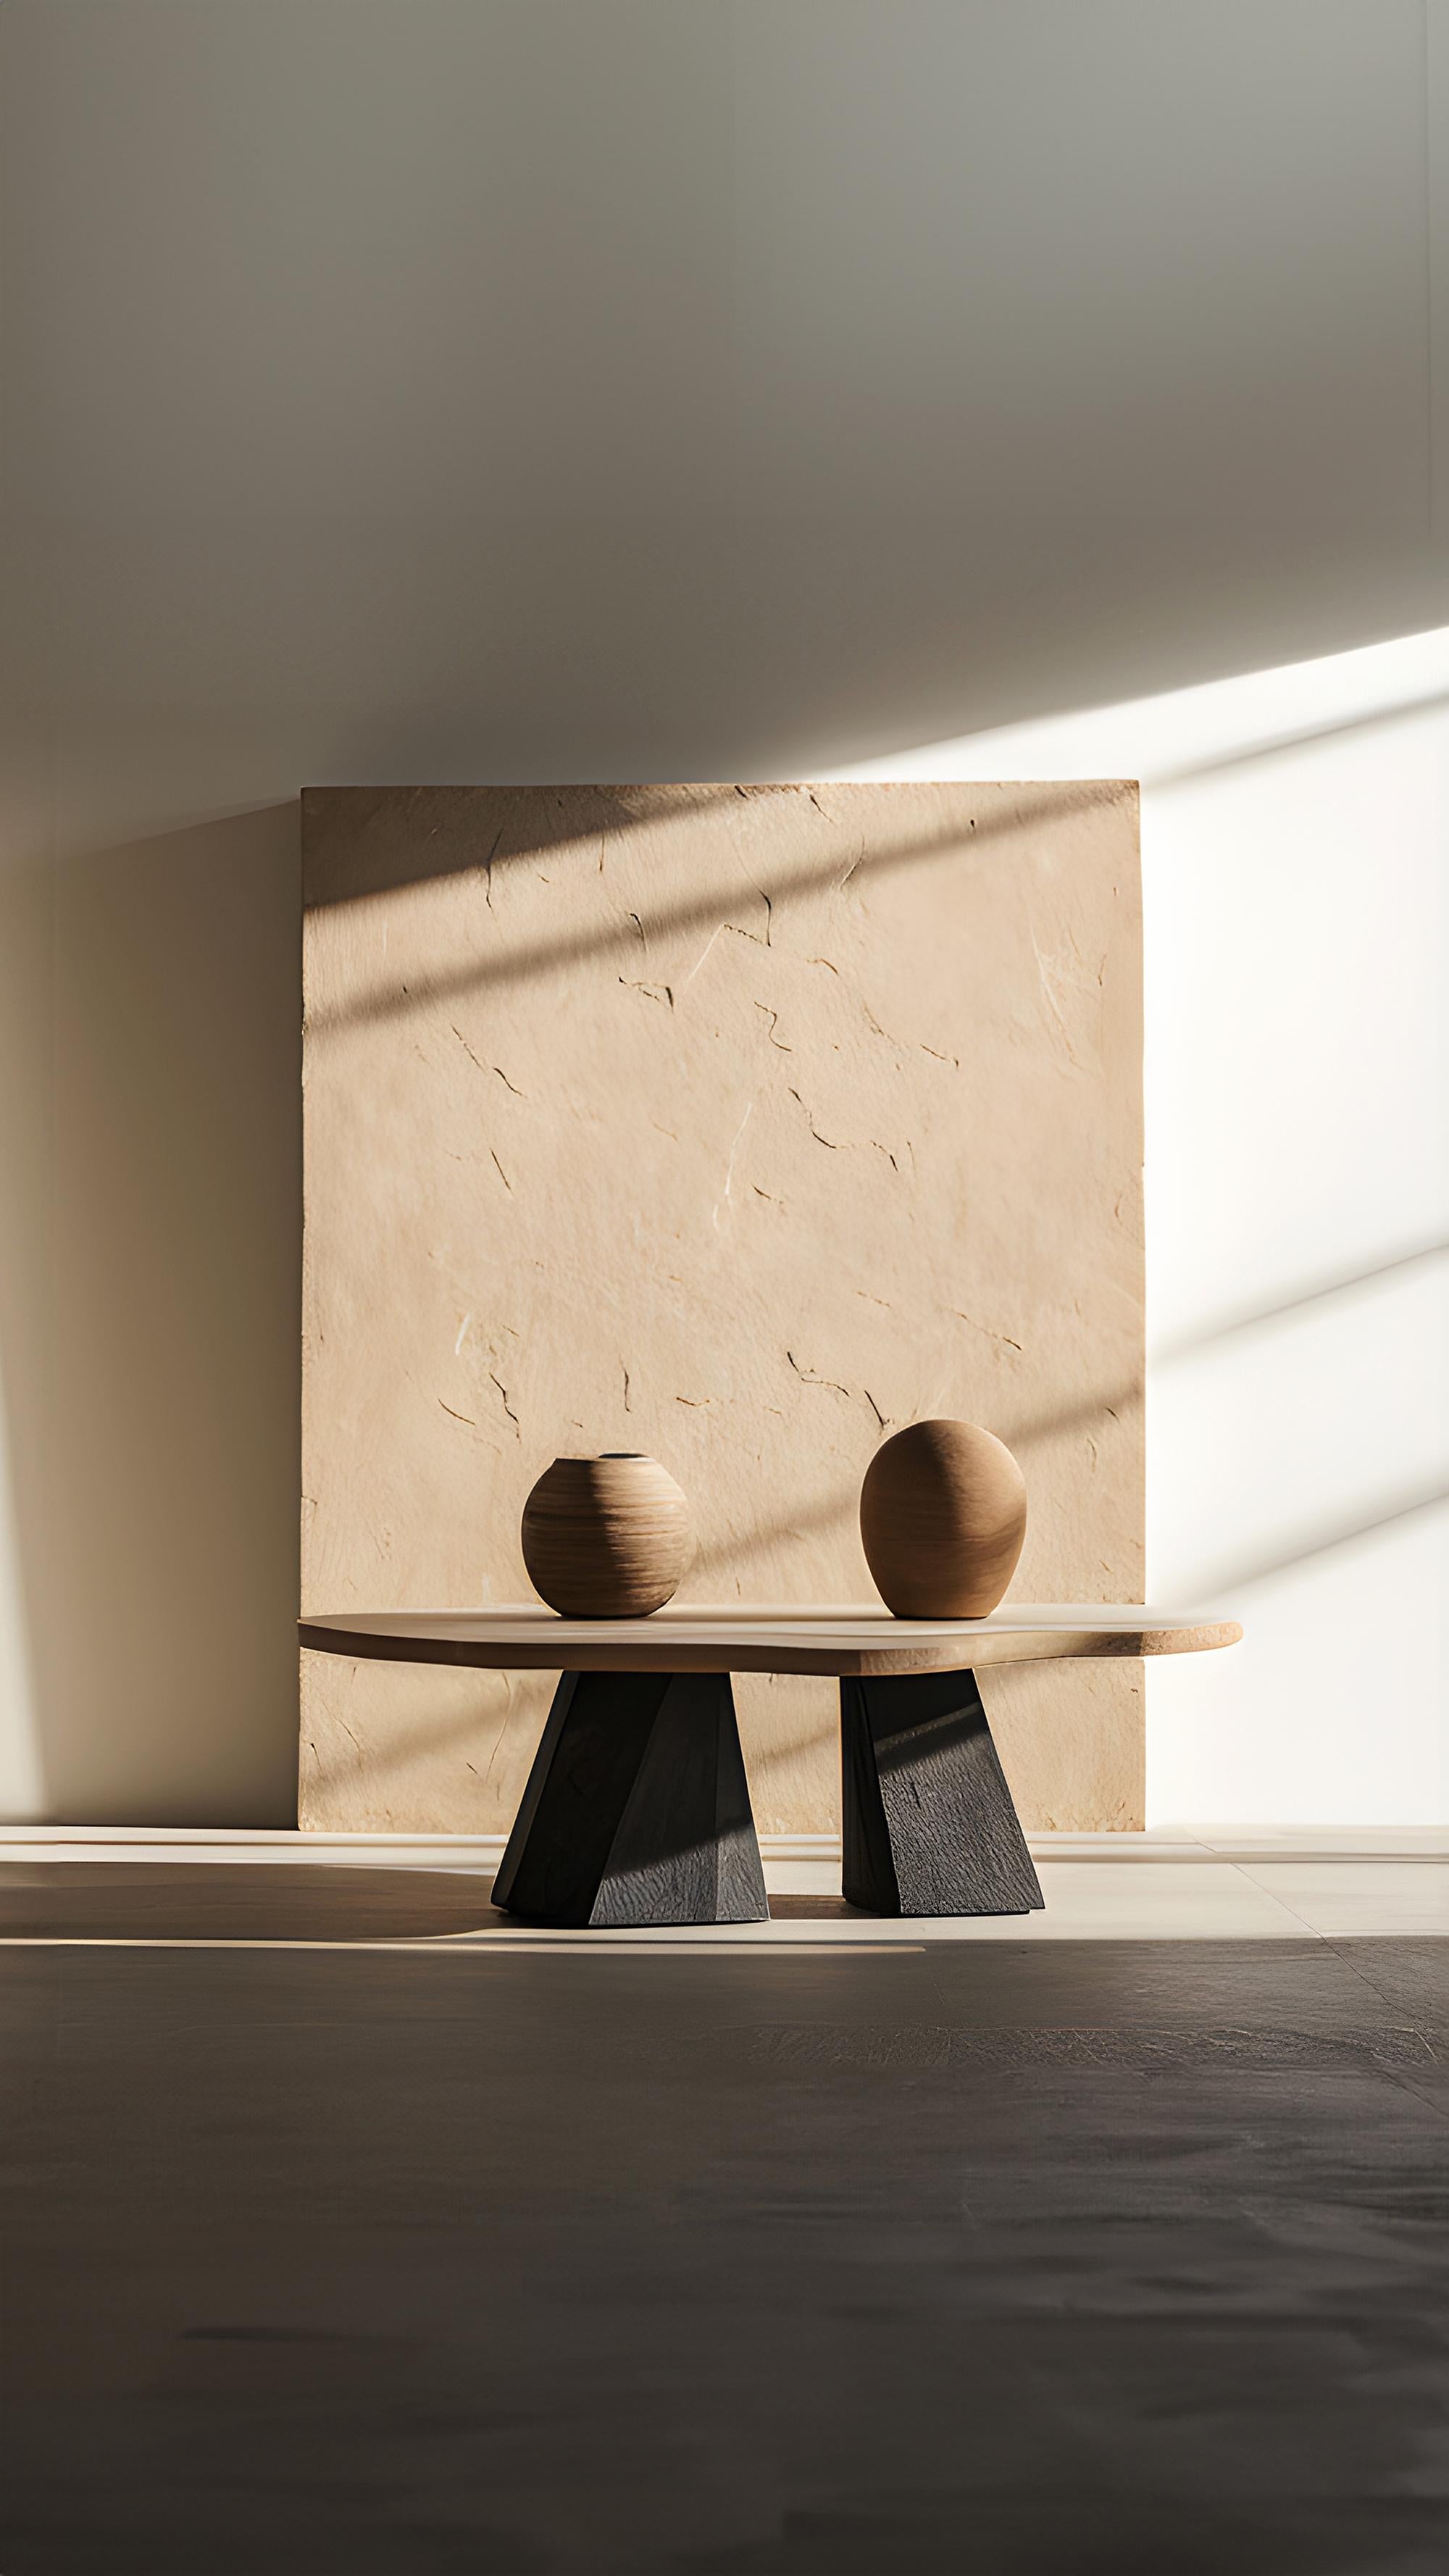 Duo-Tone Square Coffee Table - Dynamic Fundamenta 35 by NONO For Sale 1